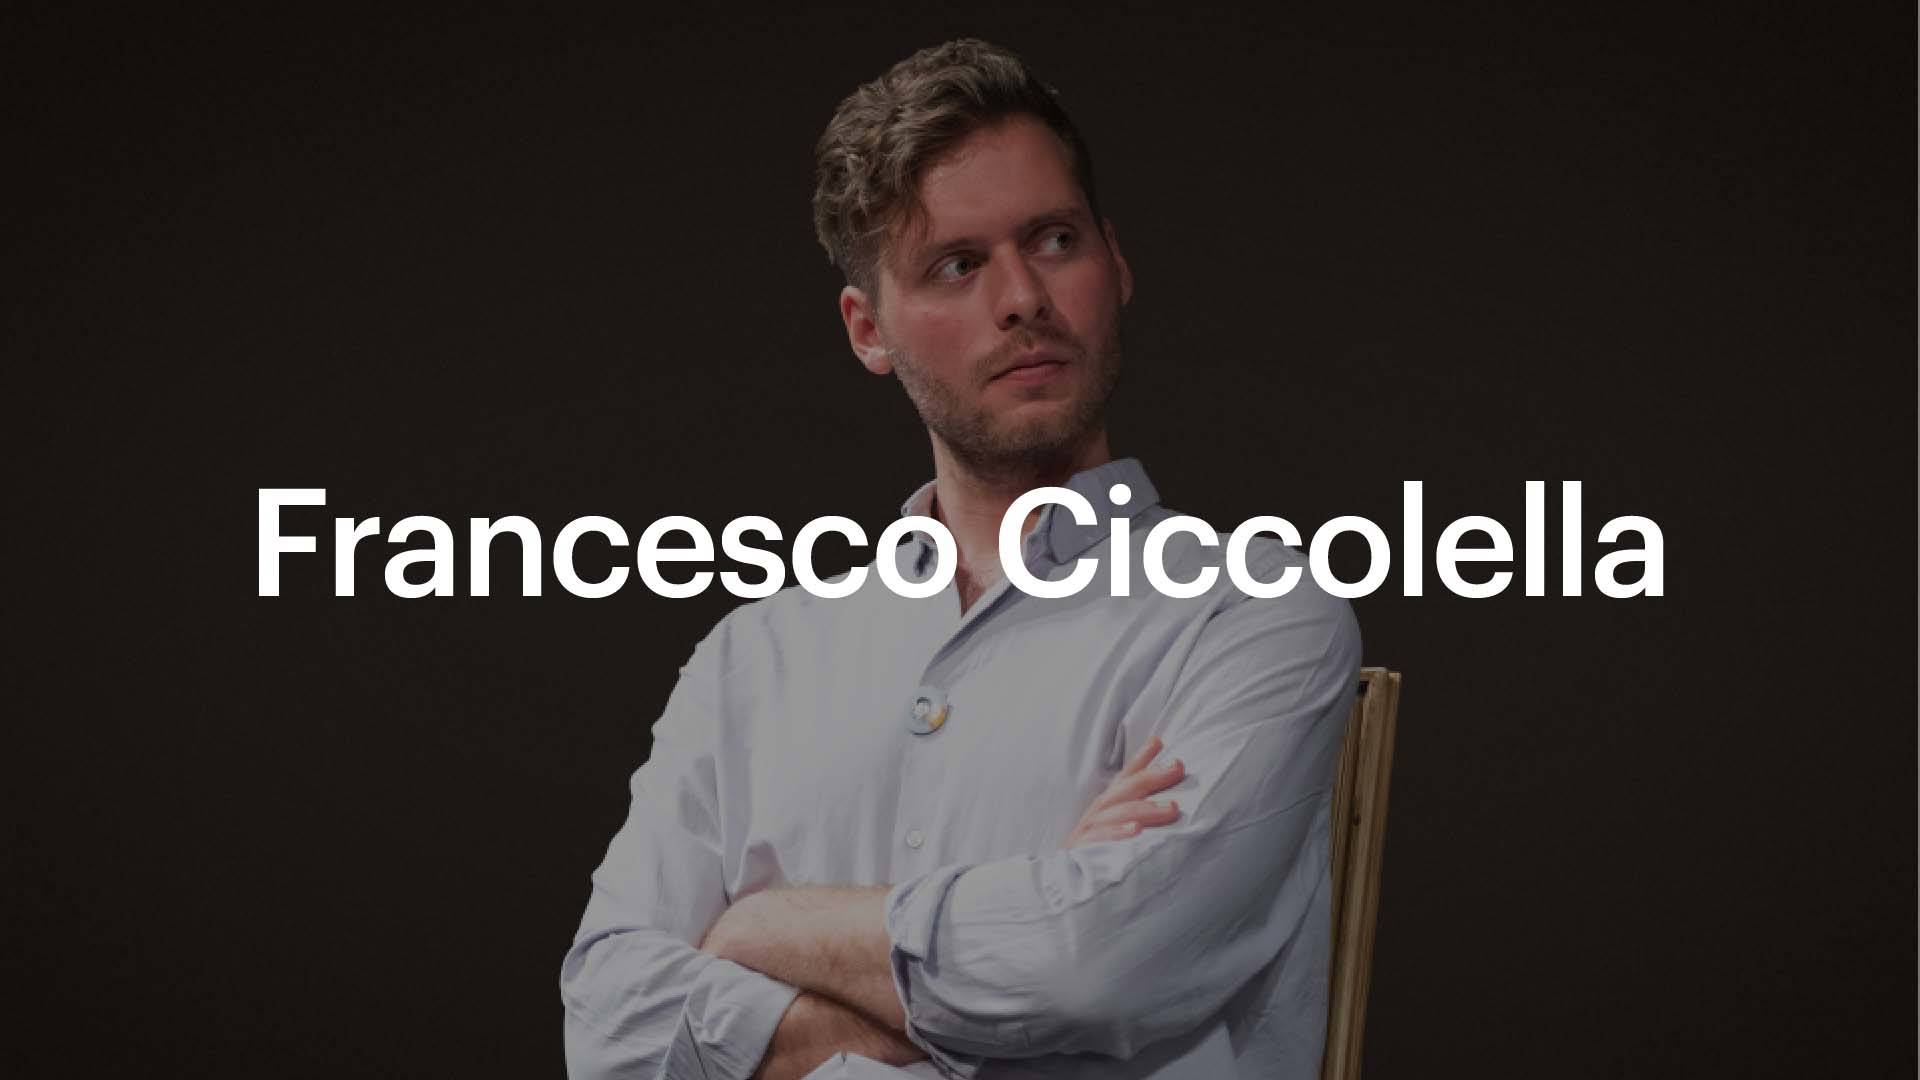 Francesco Ciccolella